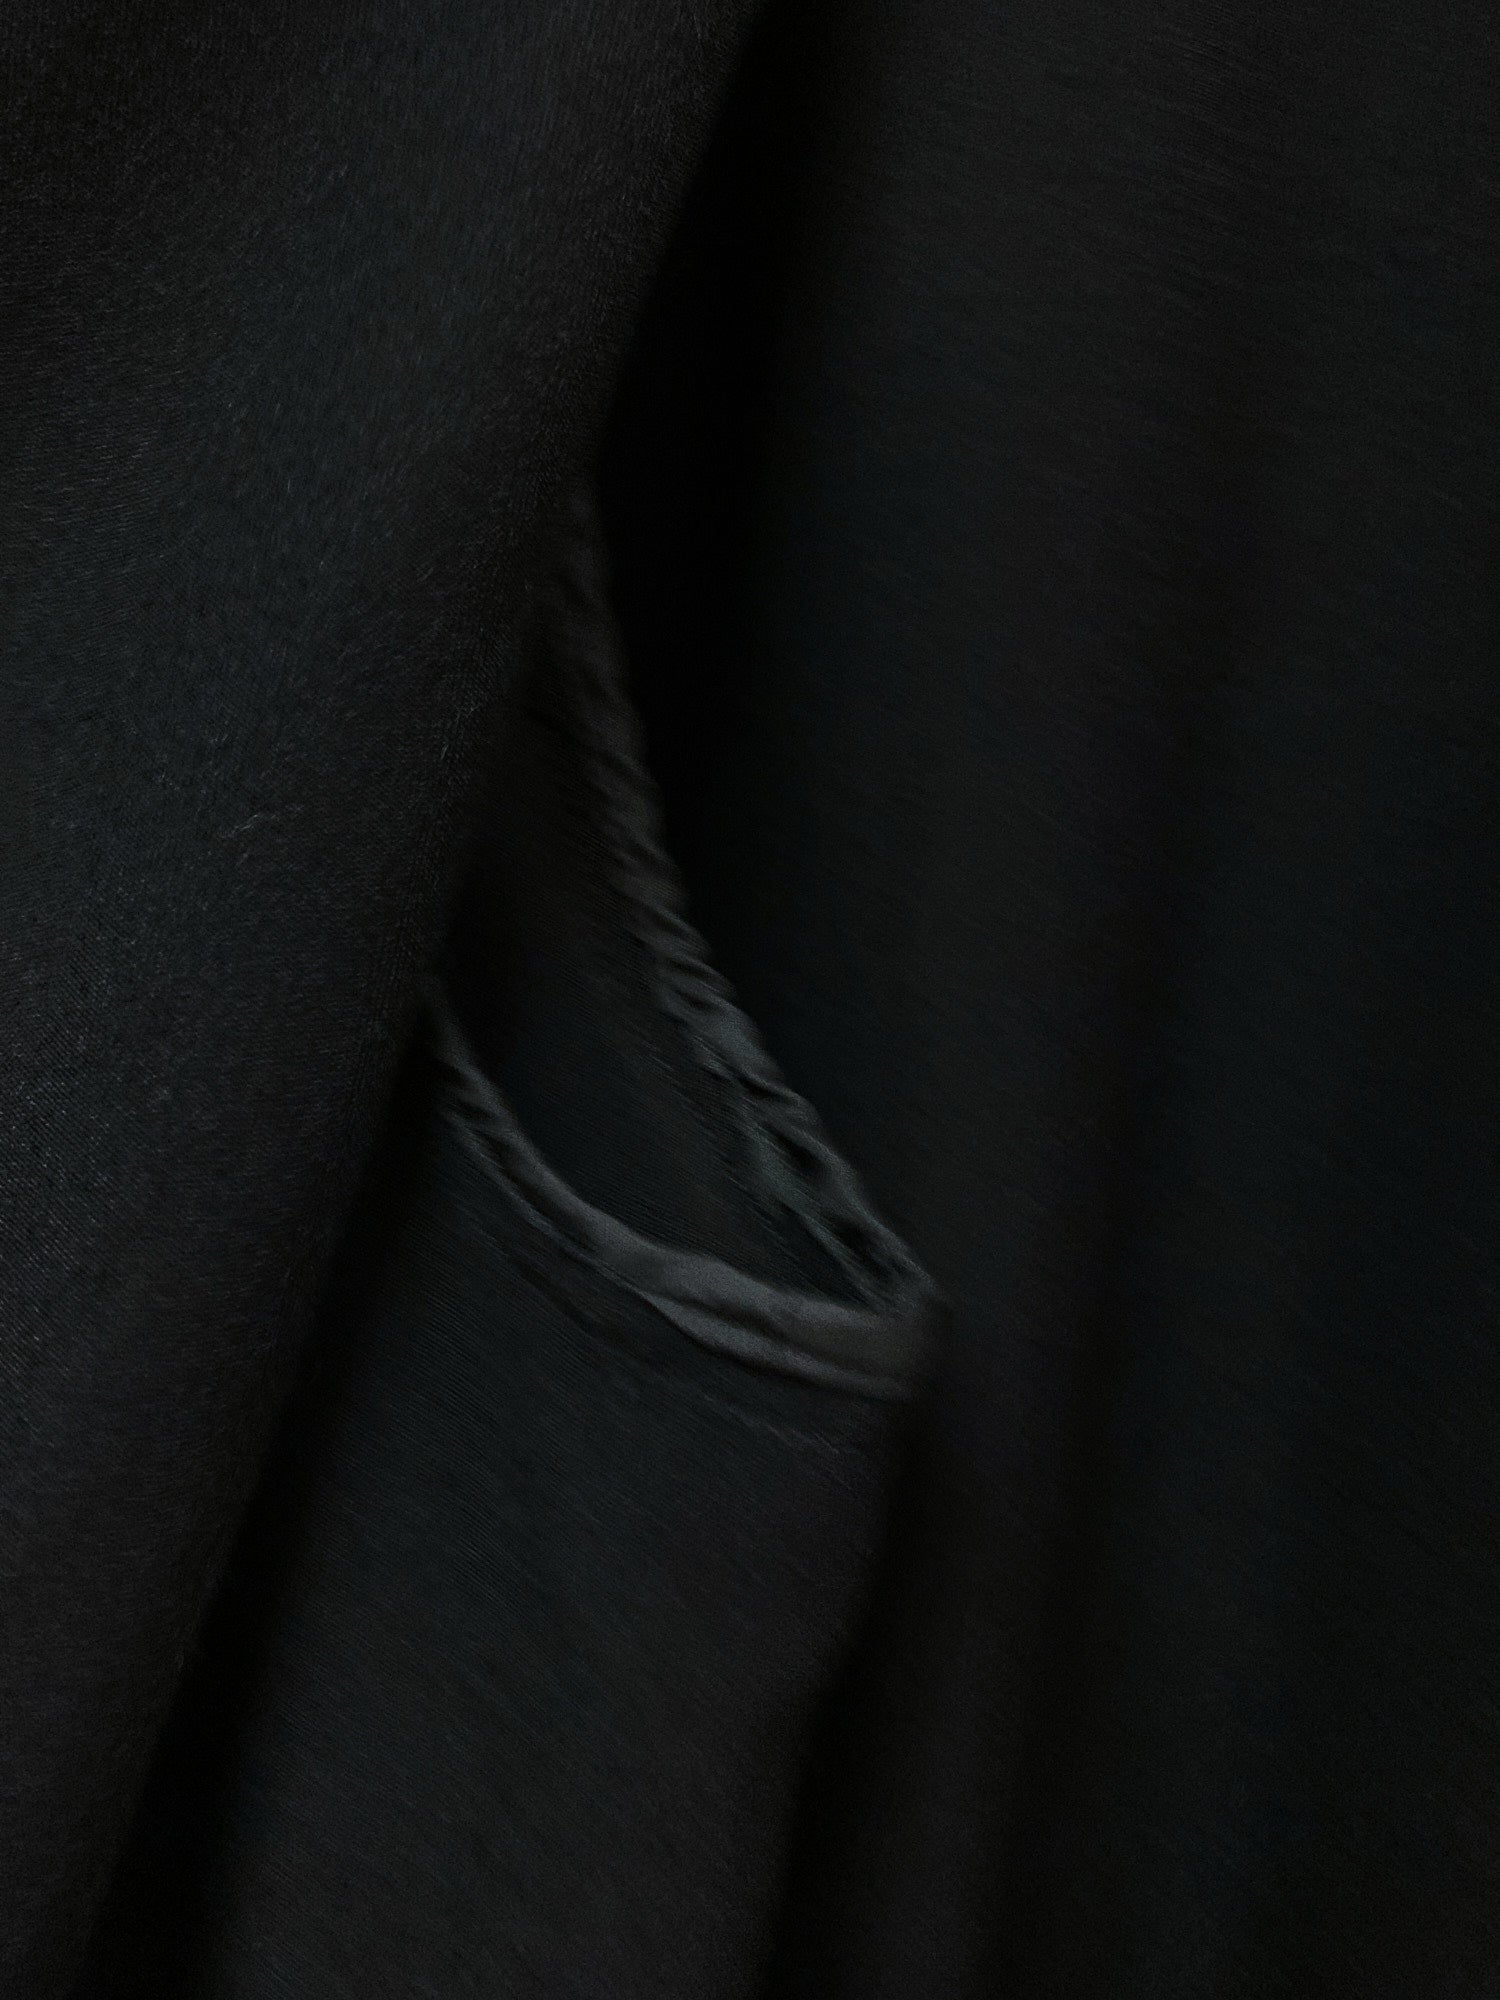 Robe de Chambre Comme des Garcons 1980s black wool full length coat - sz S M L